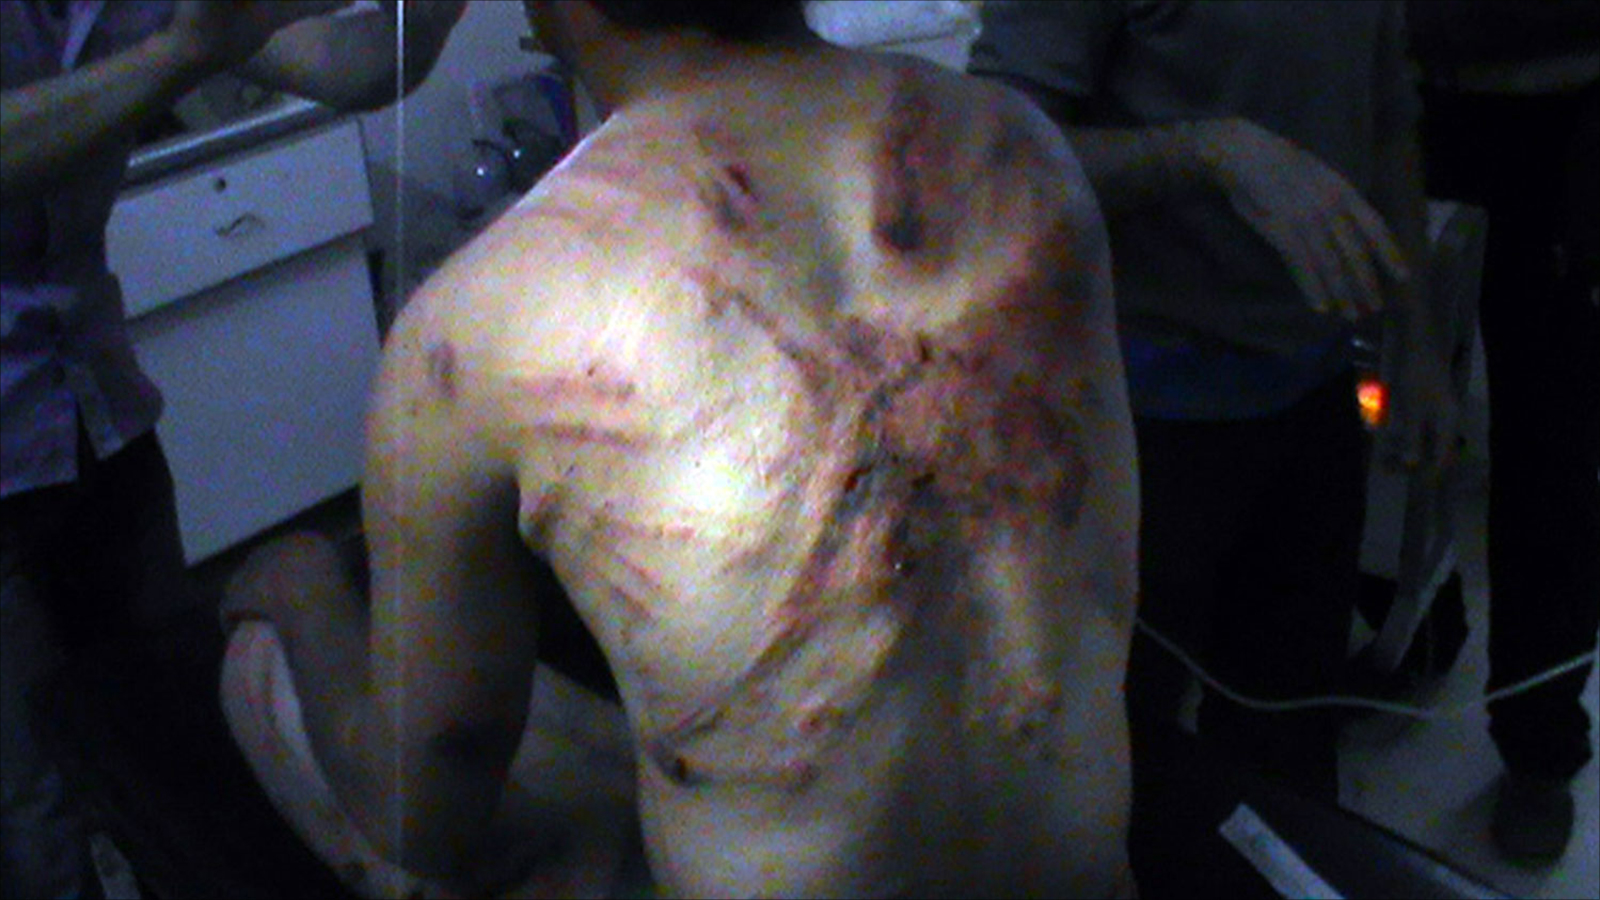 سوري في مدينة الرستن بريف حمص آخر نيسان/أبريل 2012 يقول إنه تعرض للتعذيب على يد قوات النظام (الفرنسية)